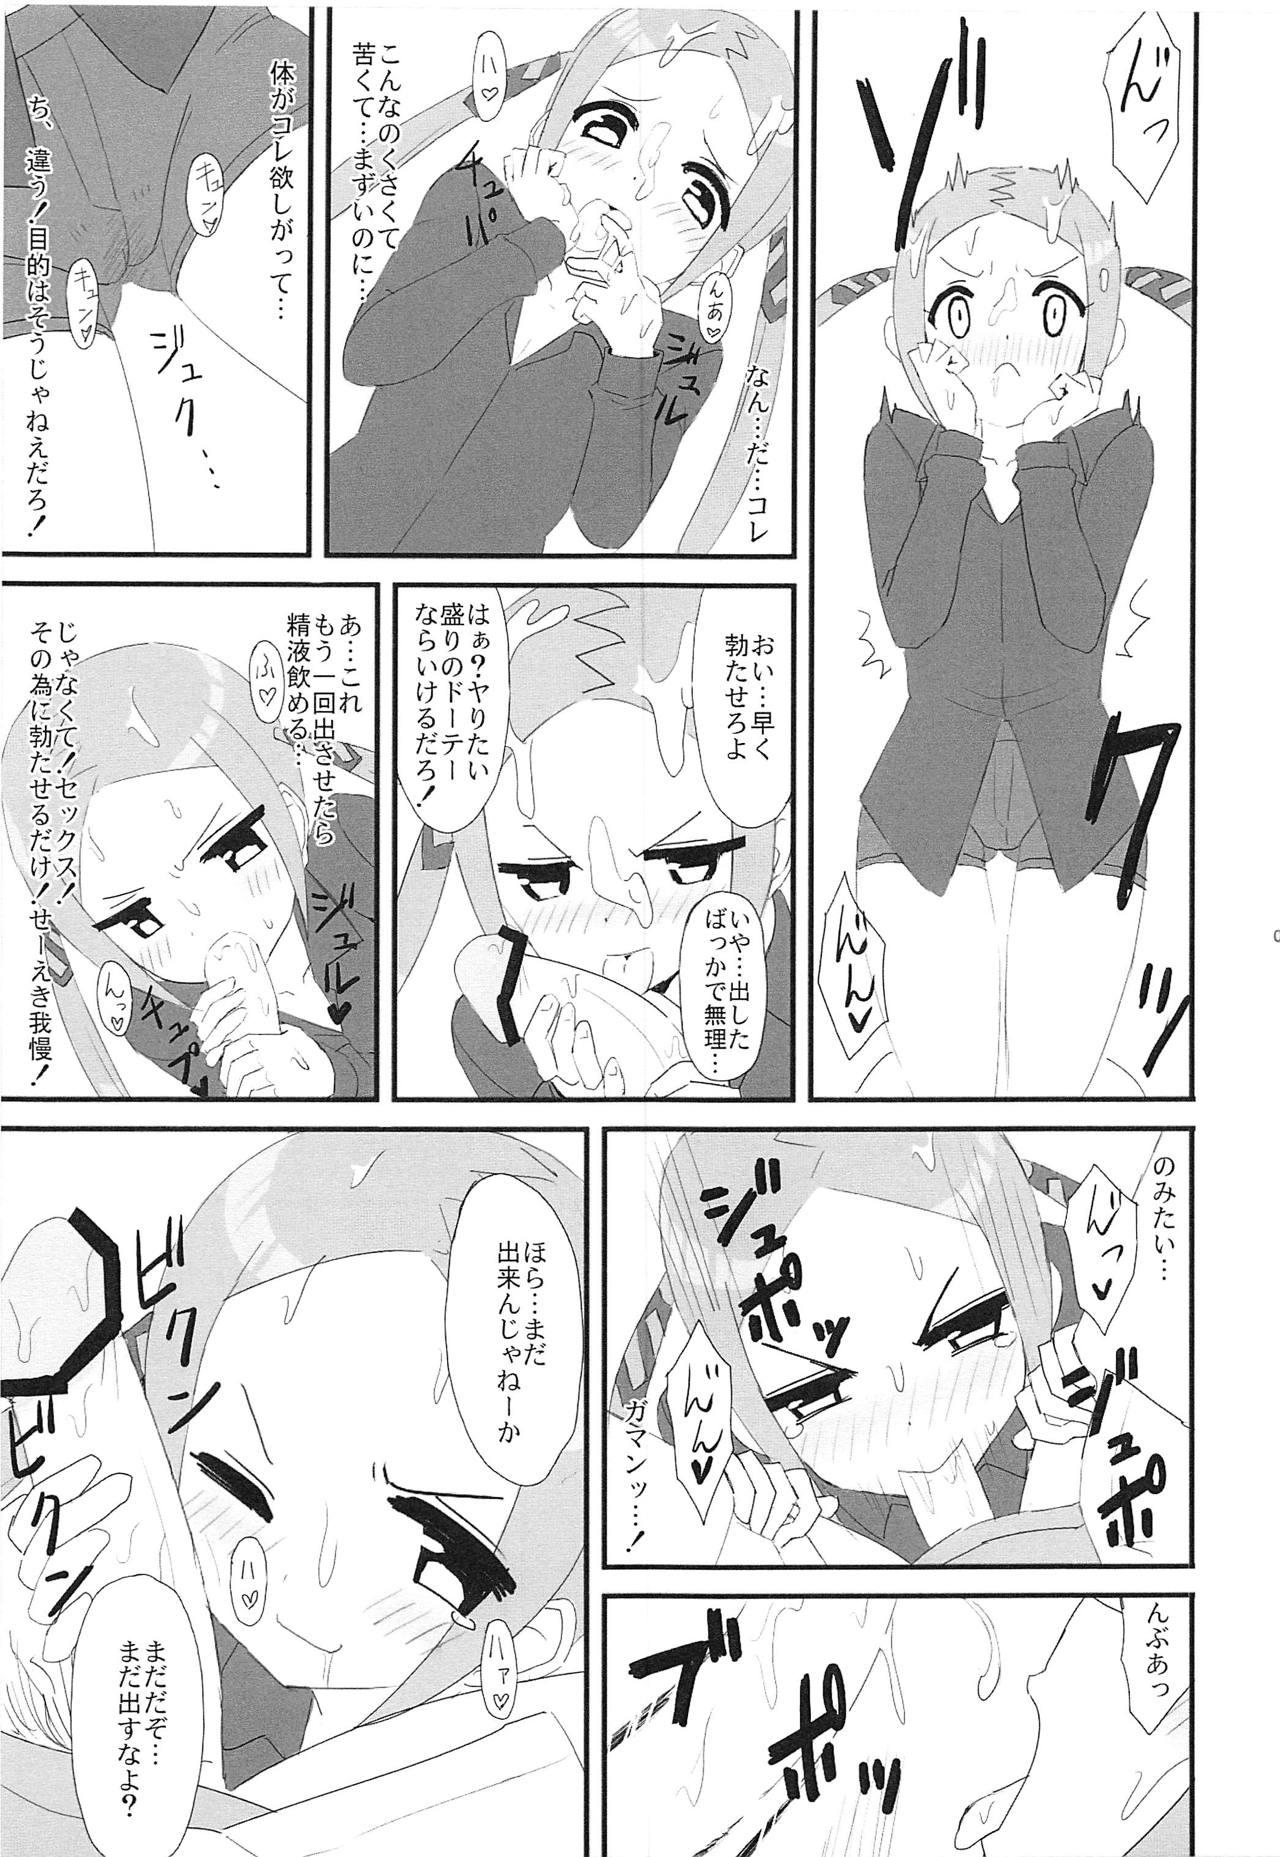 Oral Sex (COMIC1☆15) [Bakuretsu Shichouson (Bakuretsu Bavarois Maskman, Bakuretsu Chichihirosu)] Borr-chan-kun ga Borr-chan ni Naru Hanashi (SSSS.GRIDMAN) - Ssss.gridman Curious - Page 8